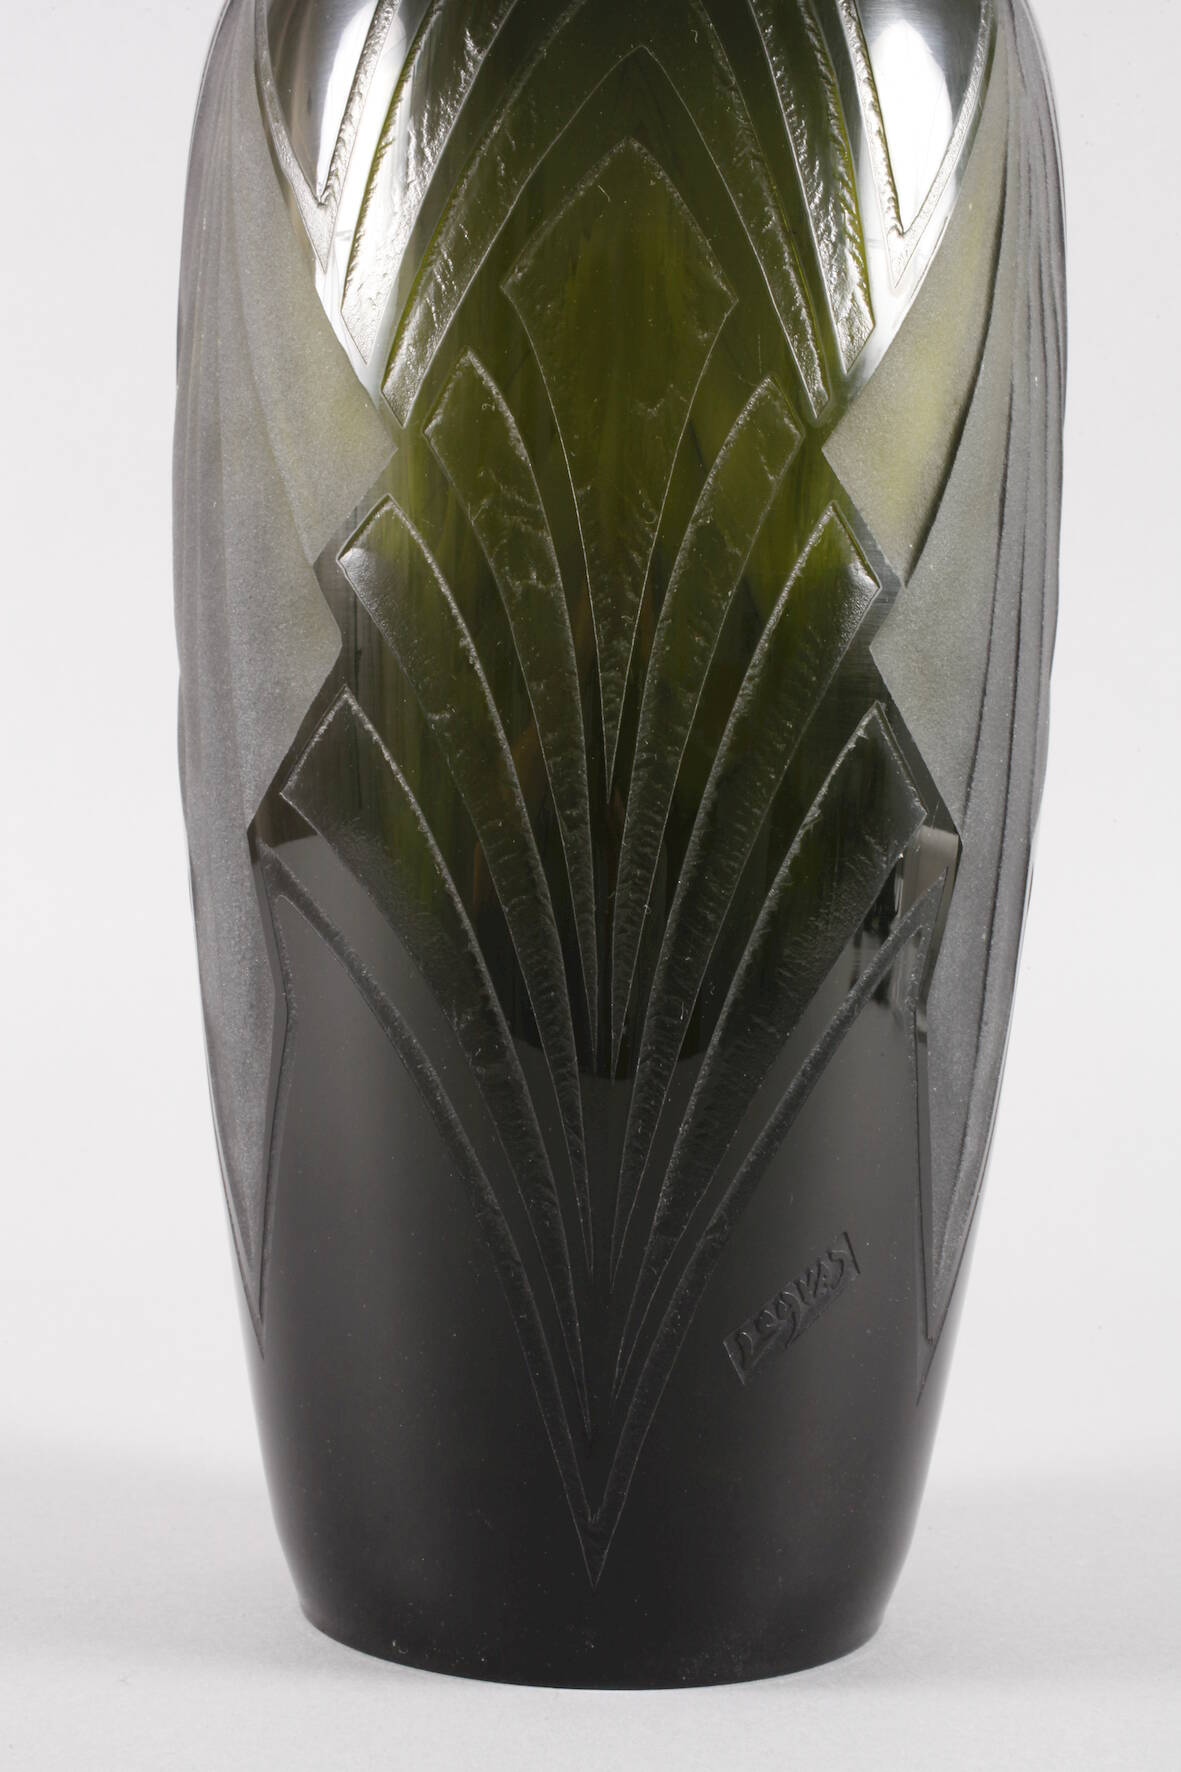 Legras große Vase Art découm 1925, Verreries de St. Denis et de Pantin Réunies, Legras & Cie., - Image 3 of 4